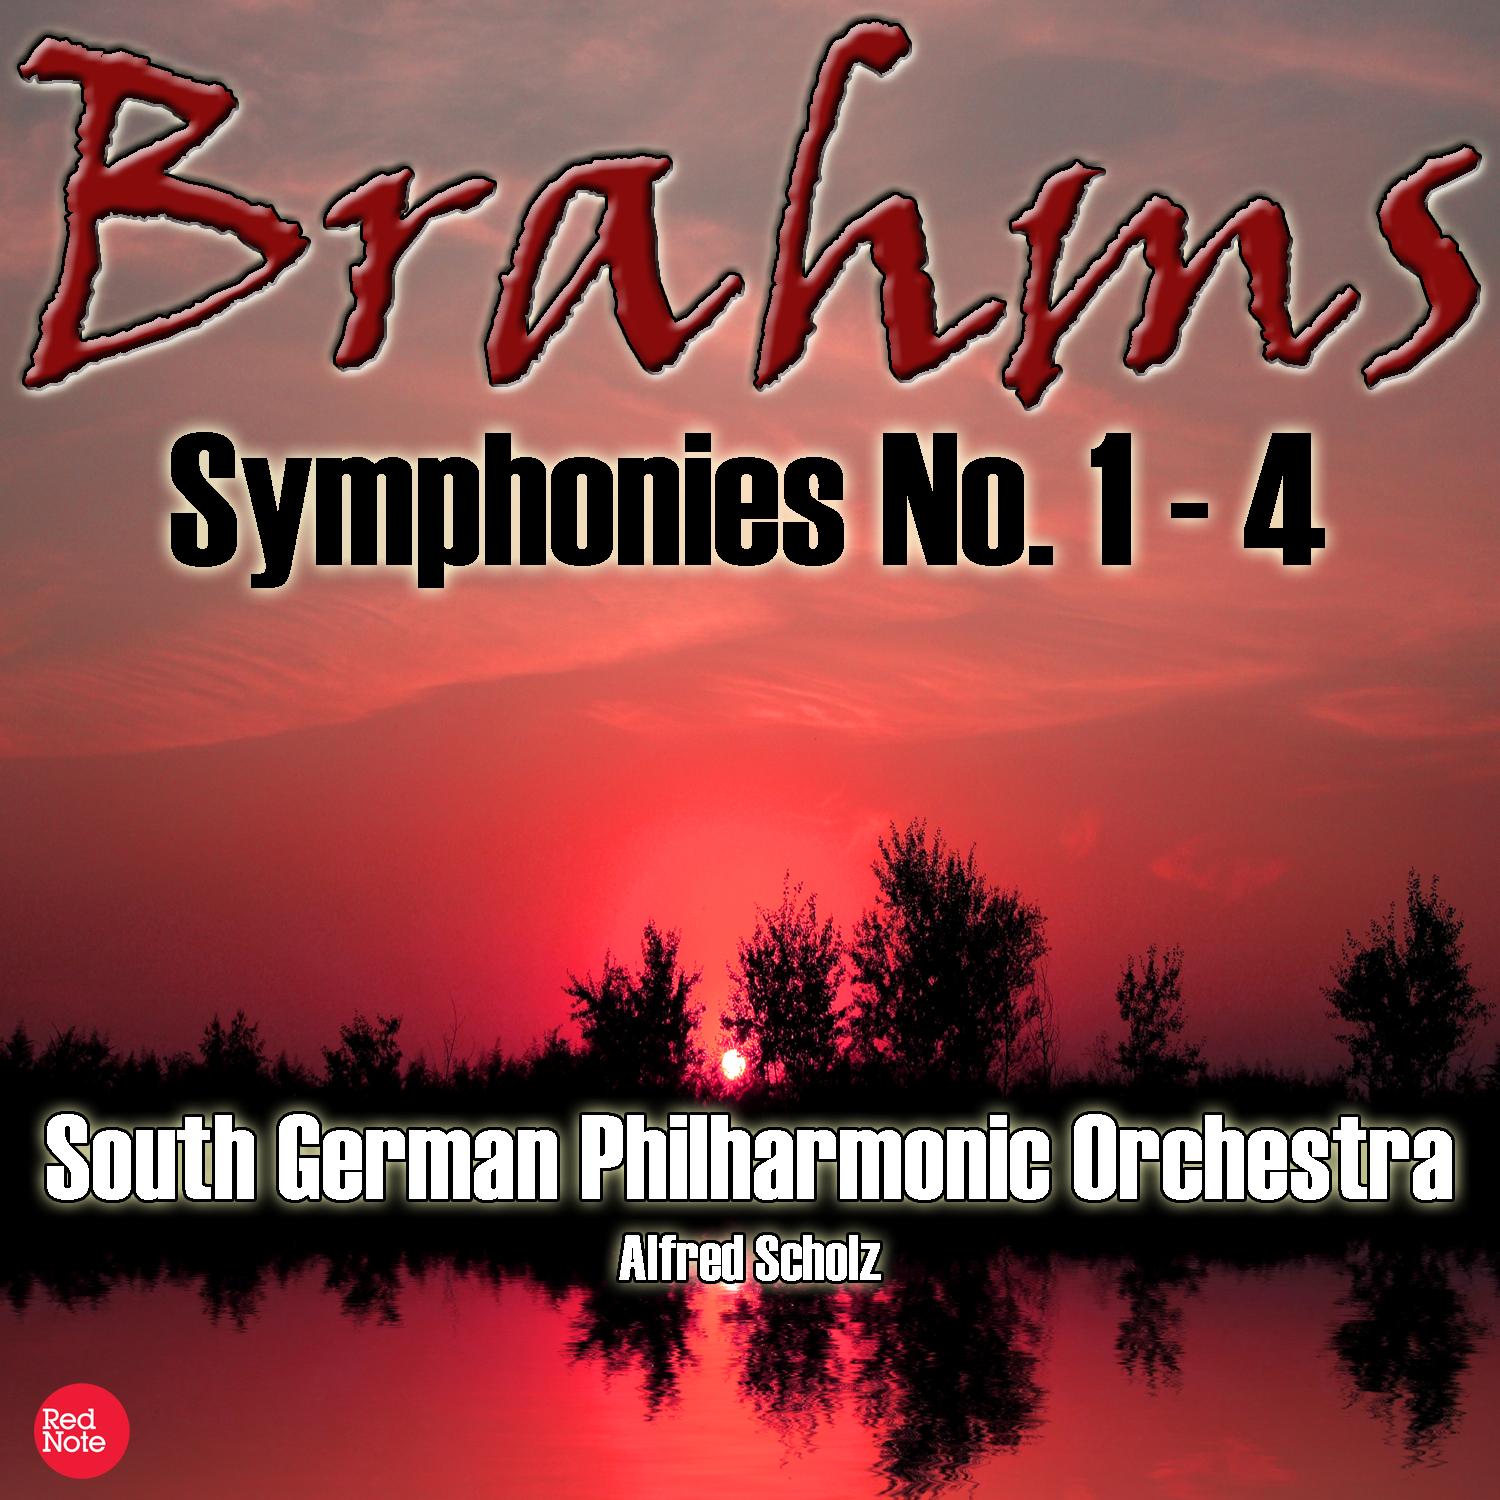 Brahms: Symphonies No. 1 - 4